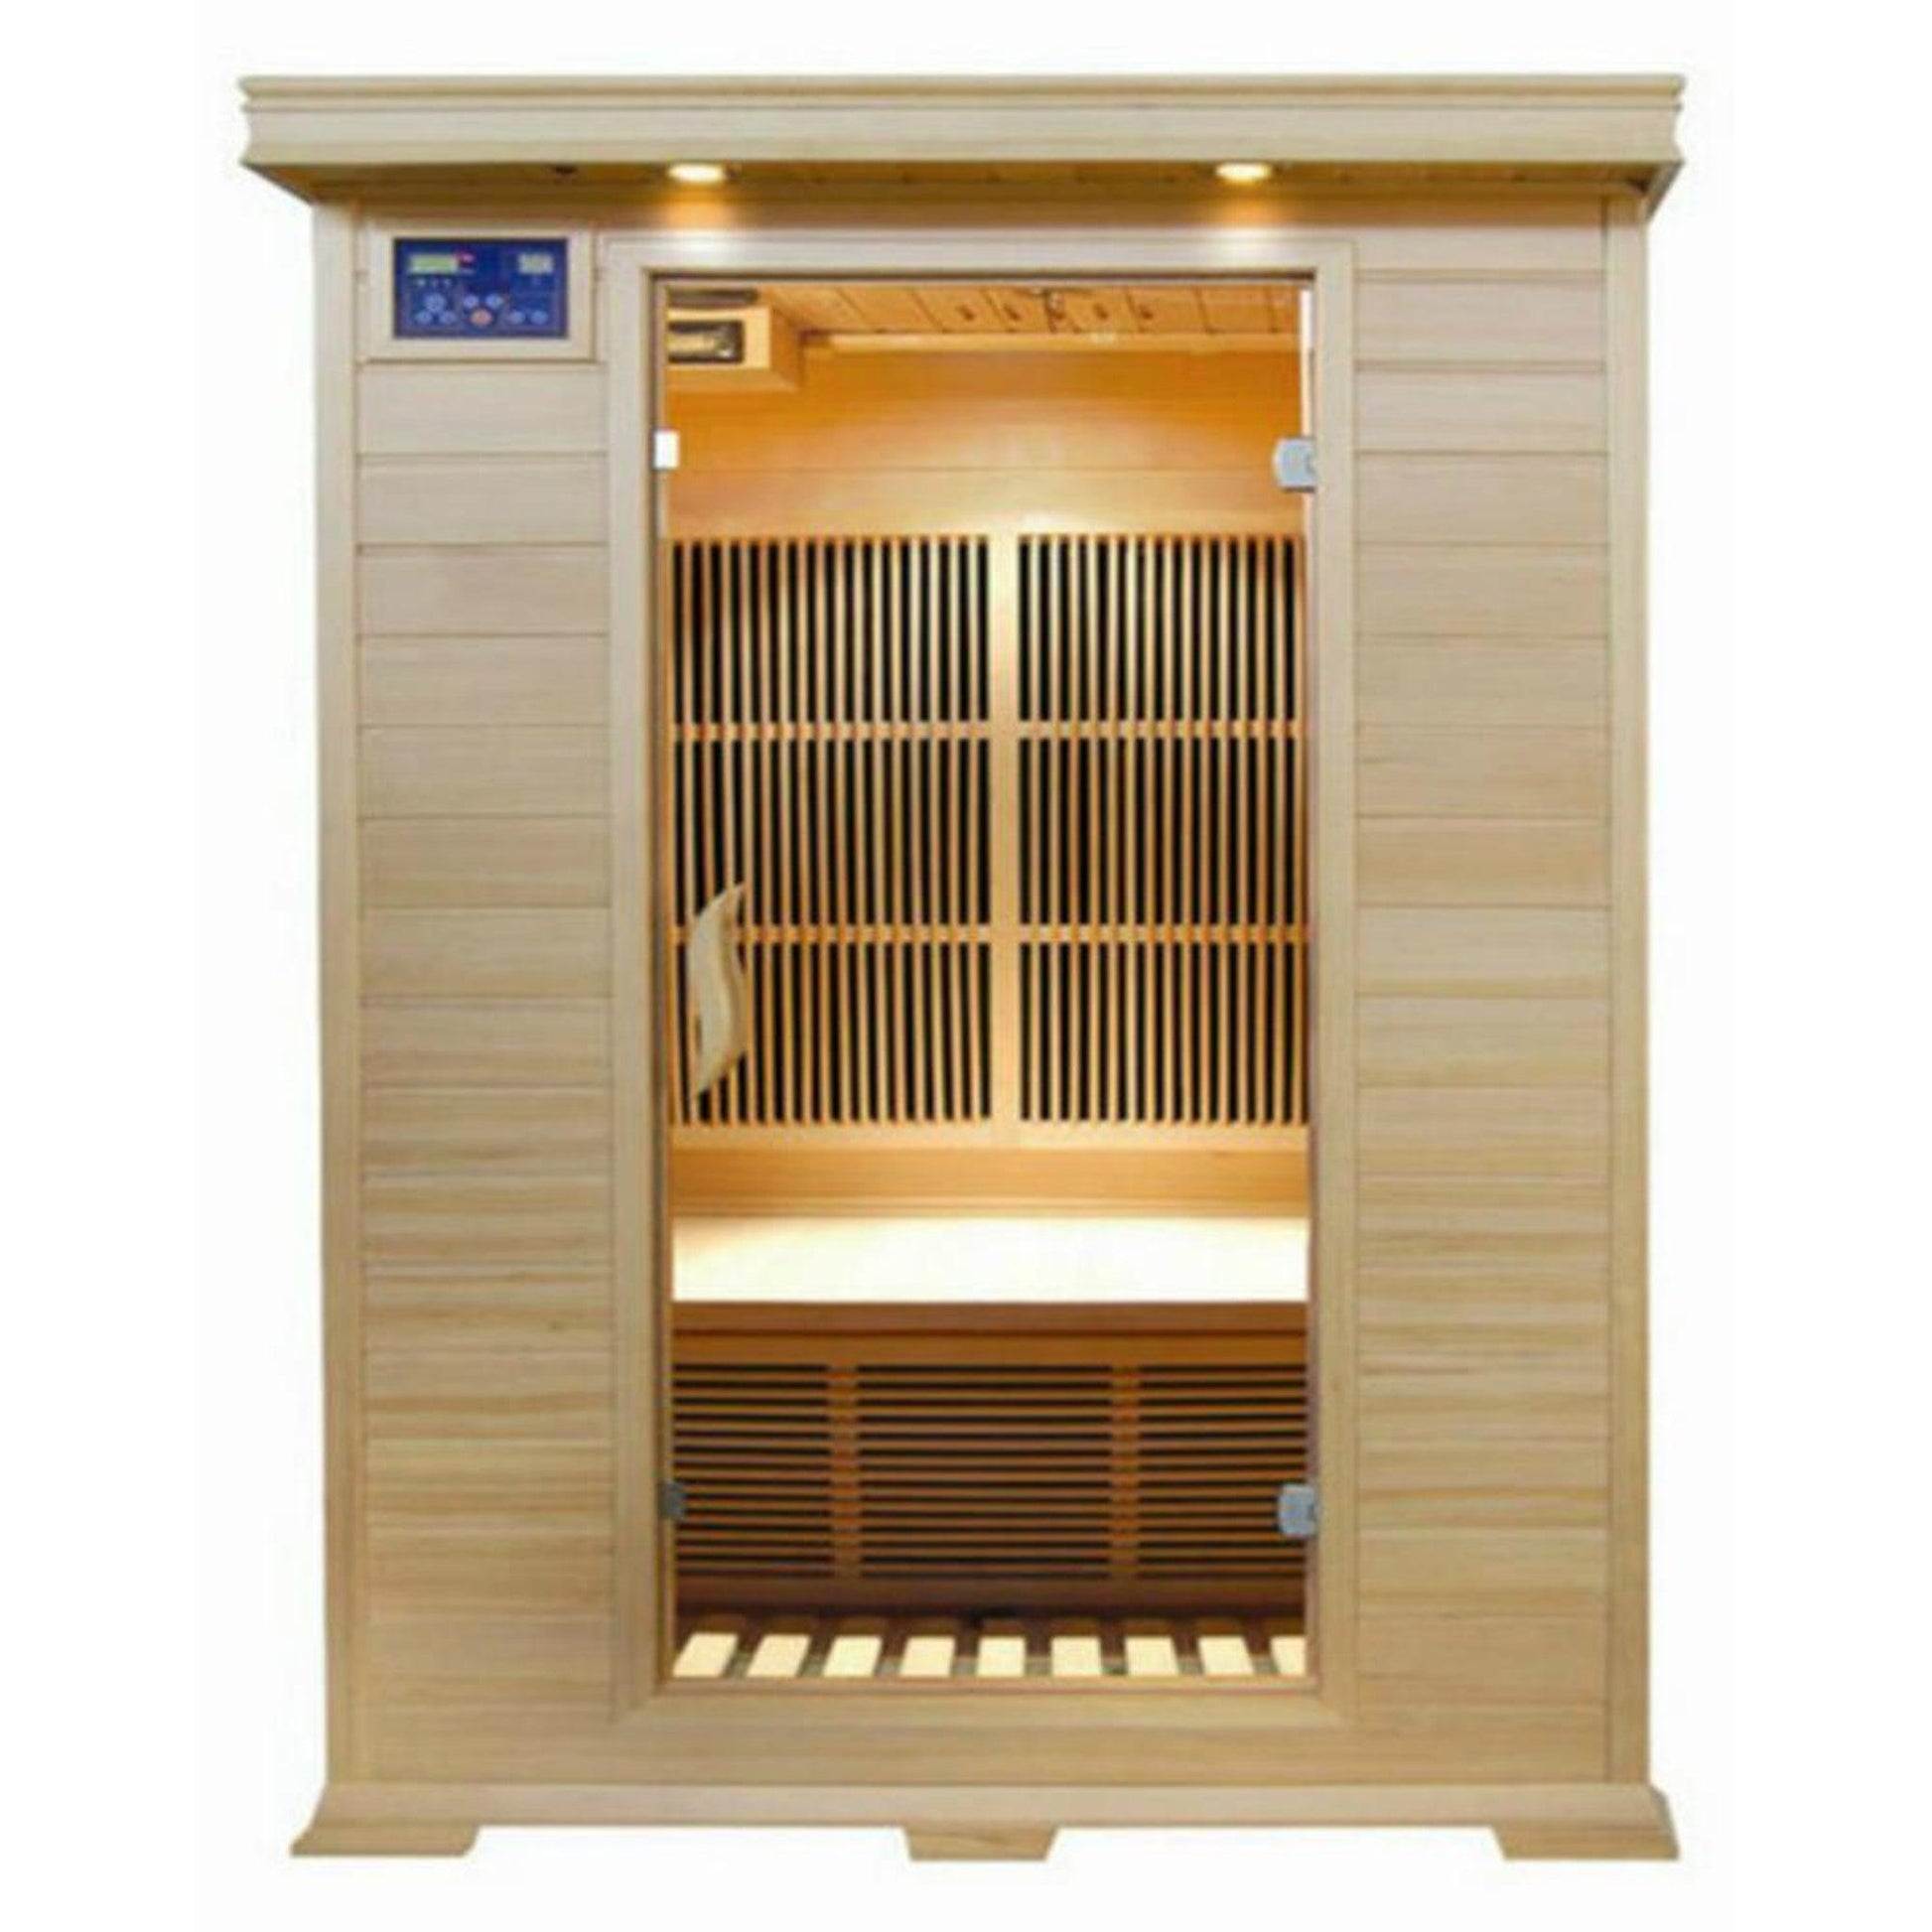 SunRay Evansport 2-Person Indoor Infrared Sauna In Hemlock Wood With Carbon Nano Heaters